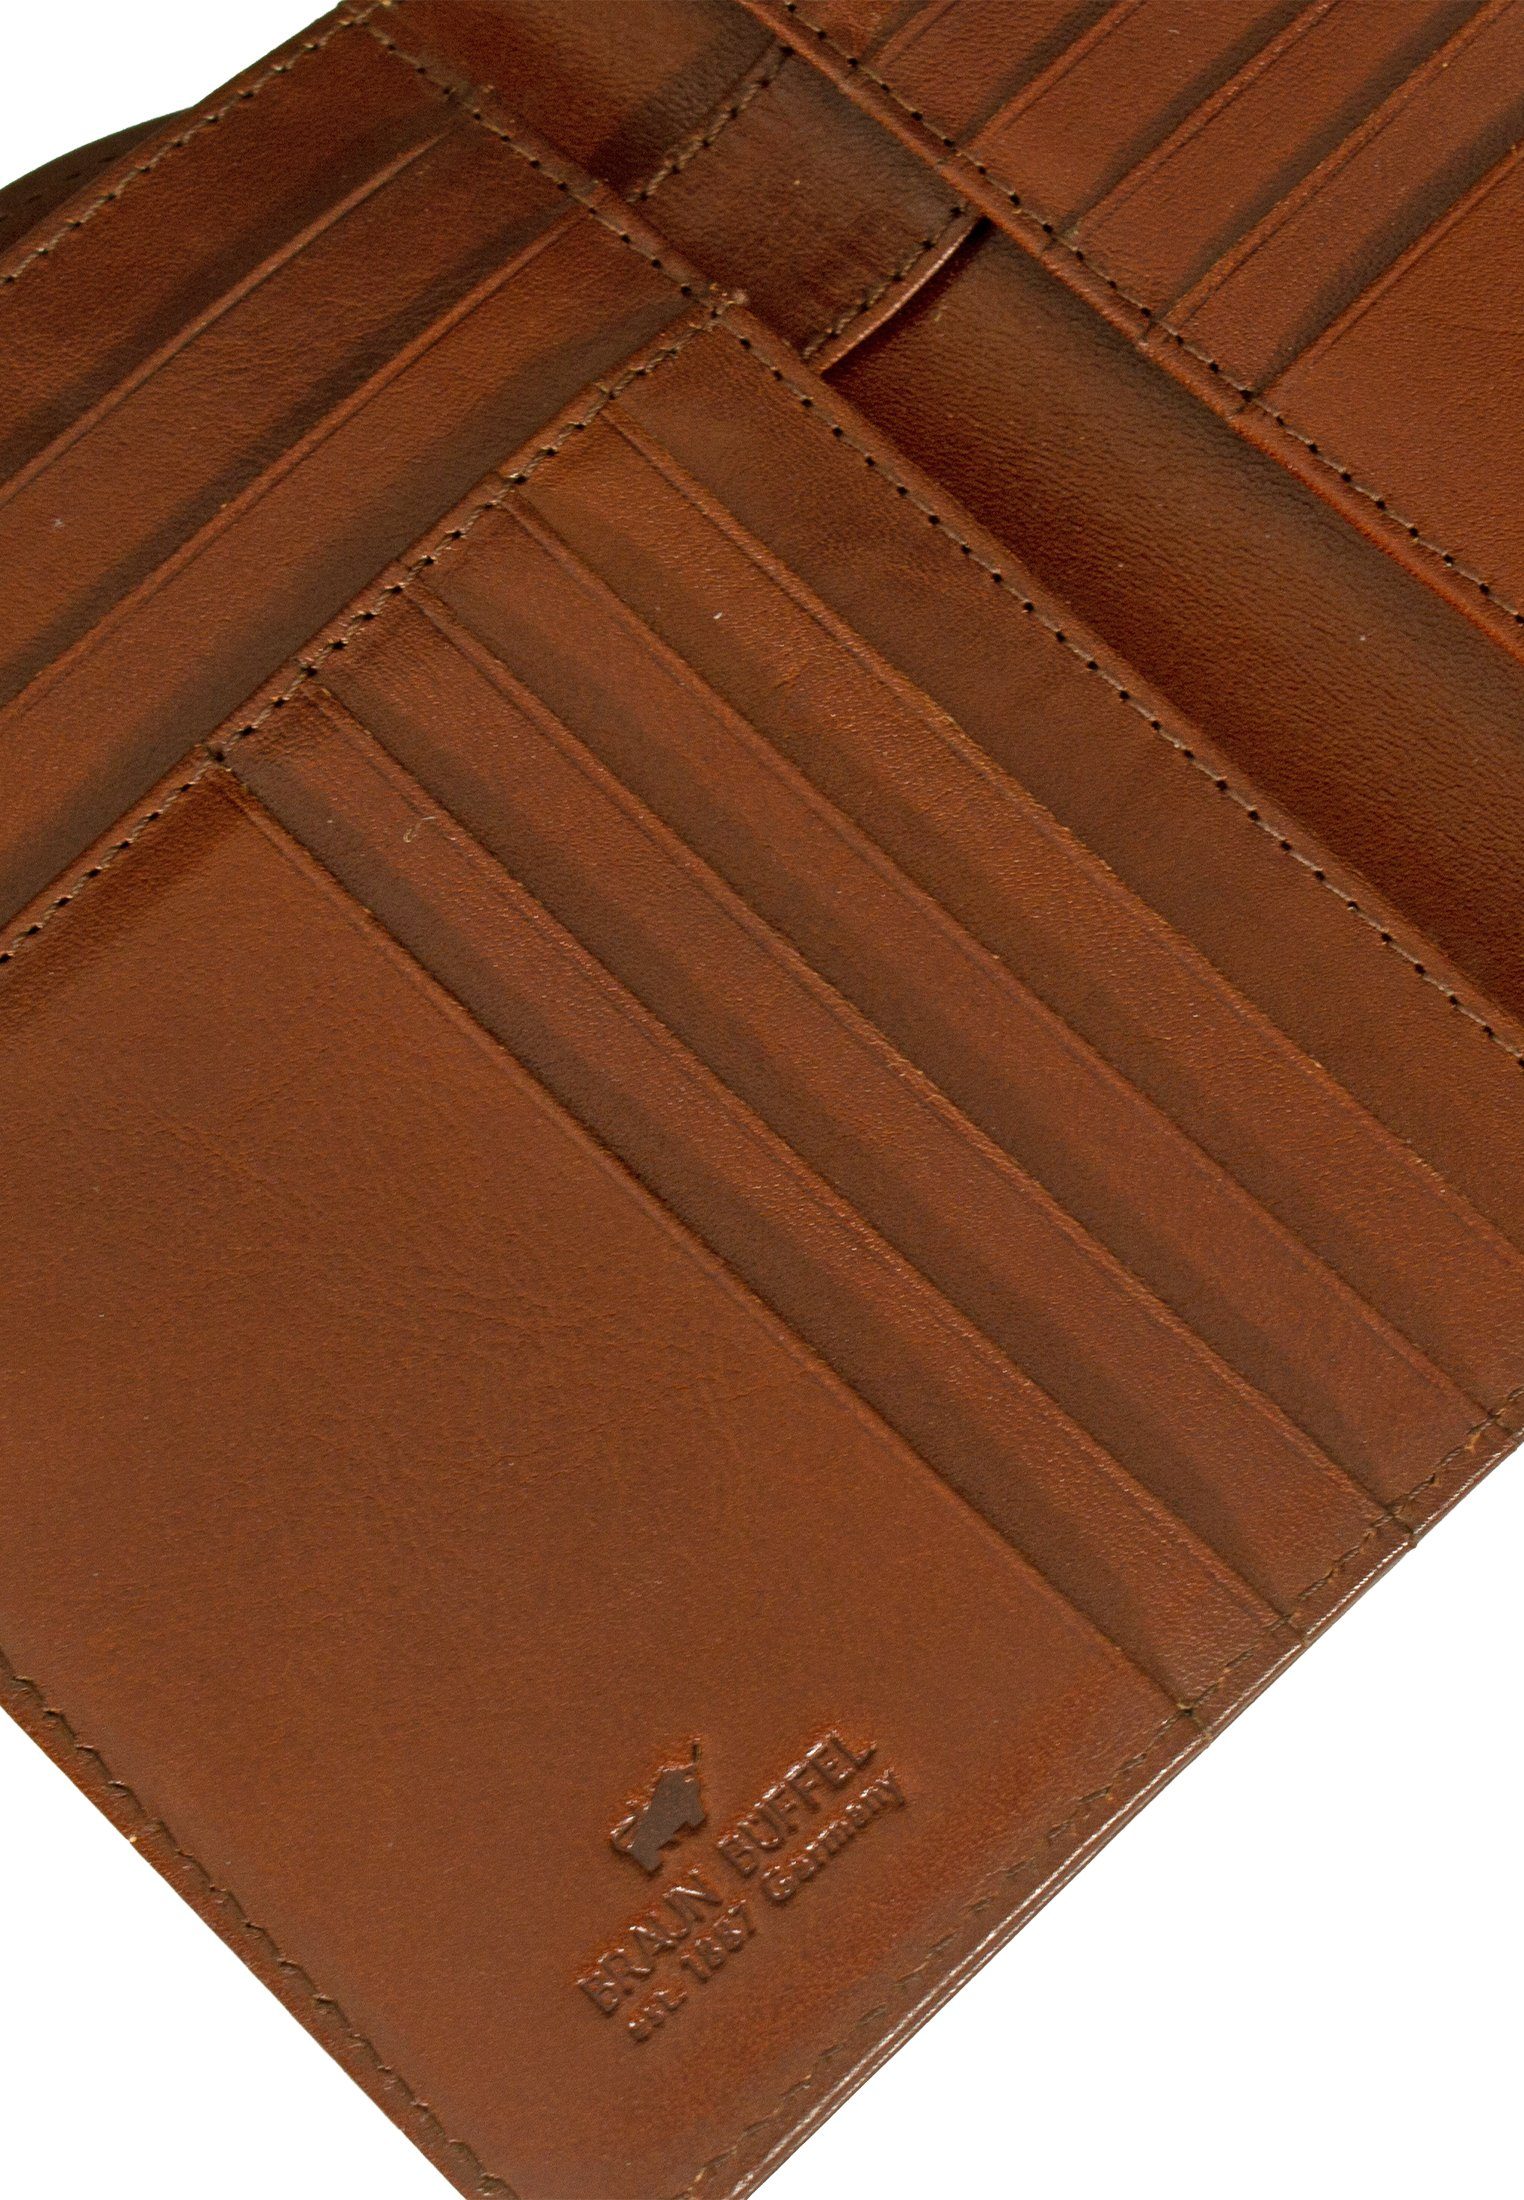 Stiftehalter mit Brieftasche Brieftasche, Braun Büffel COUNTRY palisandro RFID